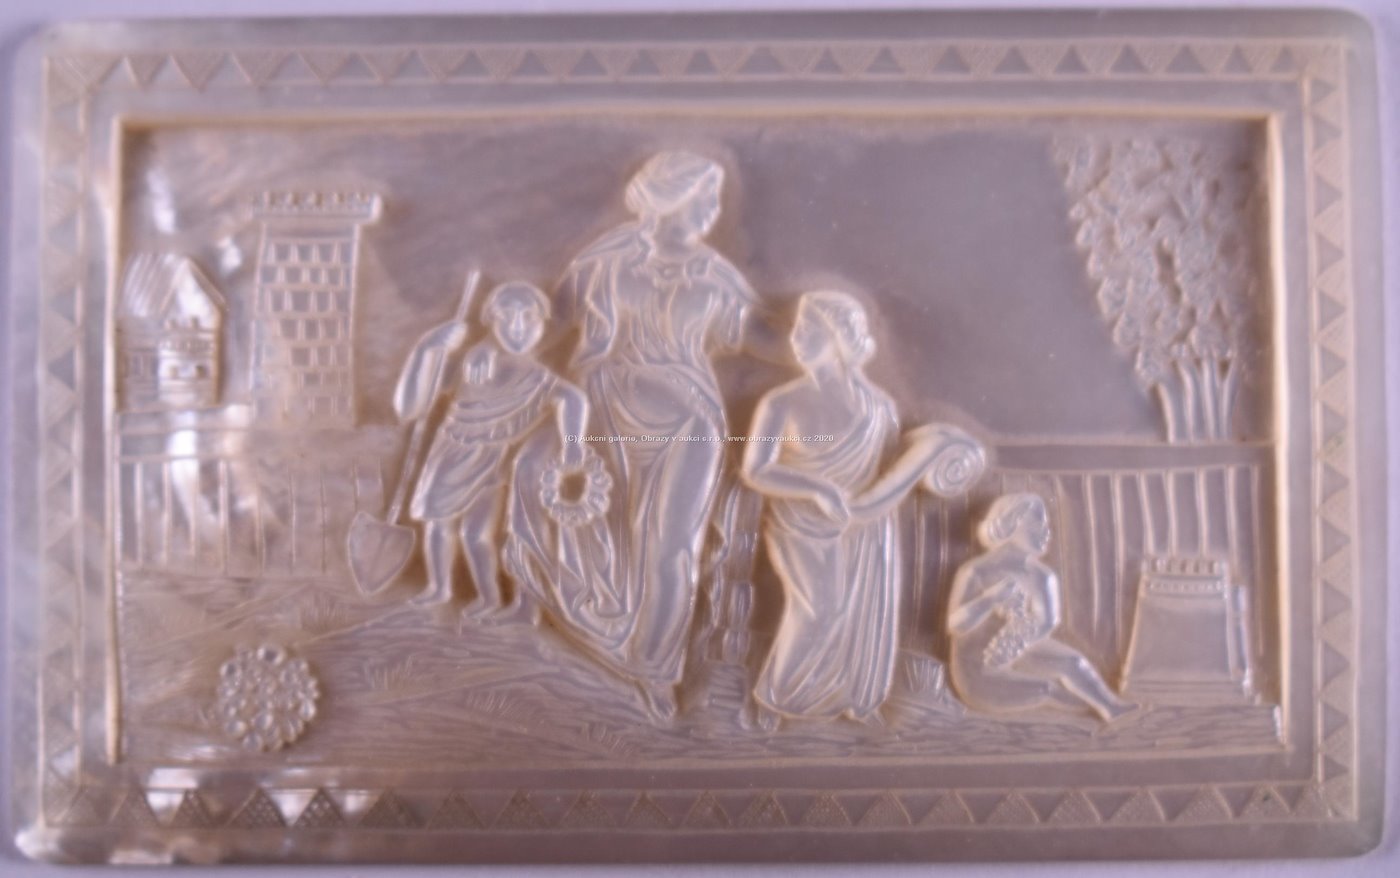 Střední Evropa, kolem poloviny 19. století - Reliéf s motivem rodiny oplakávající otce